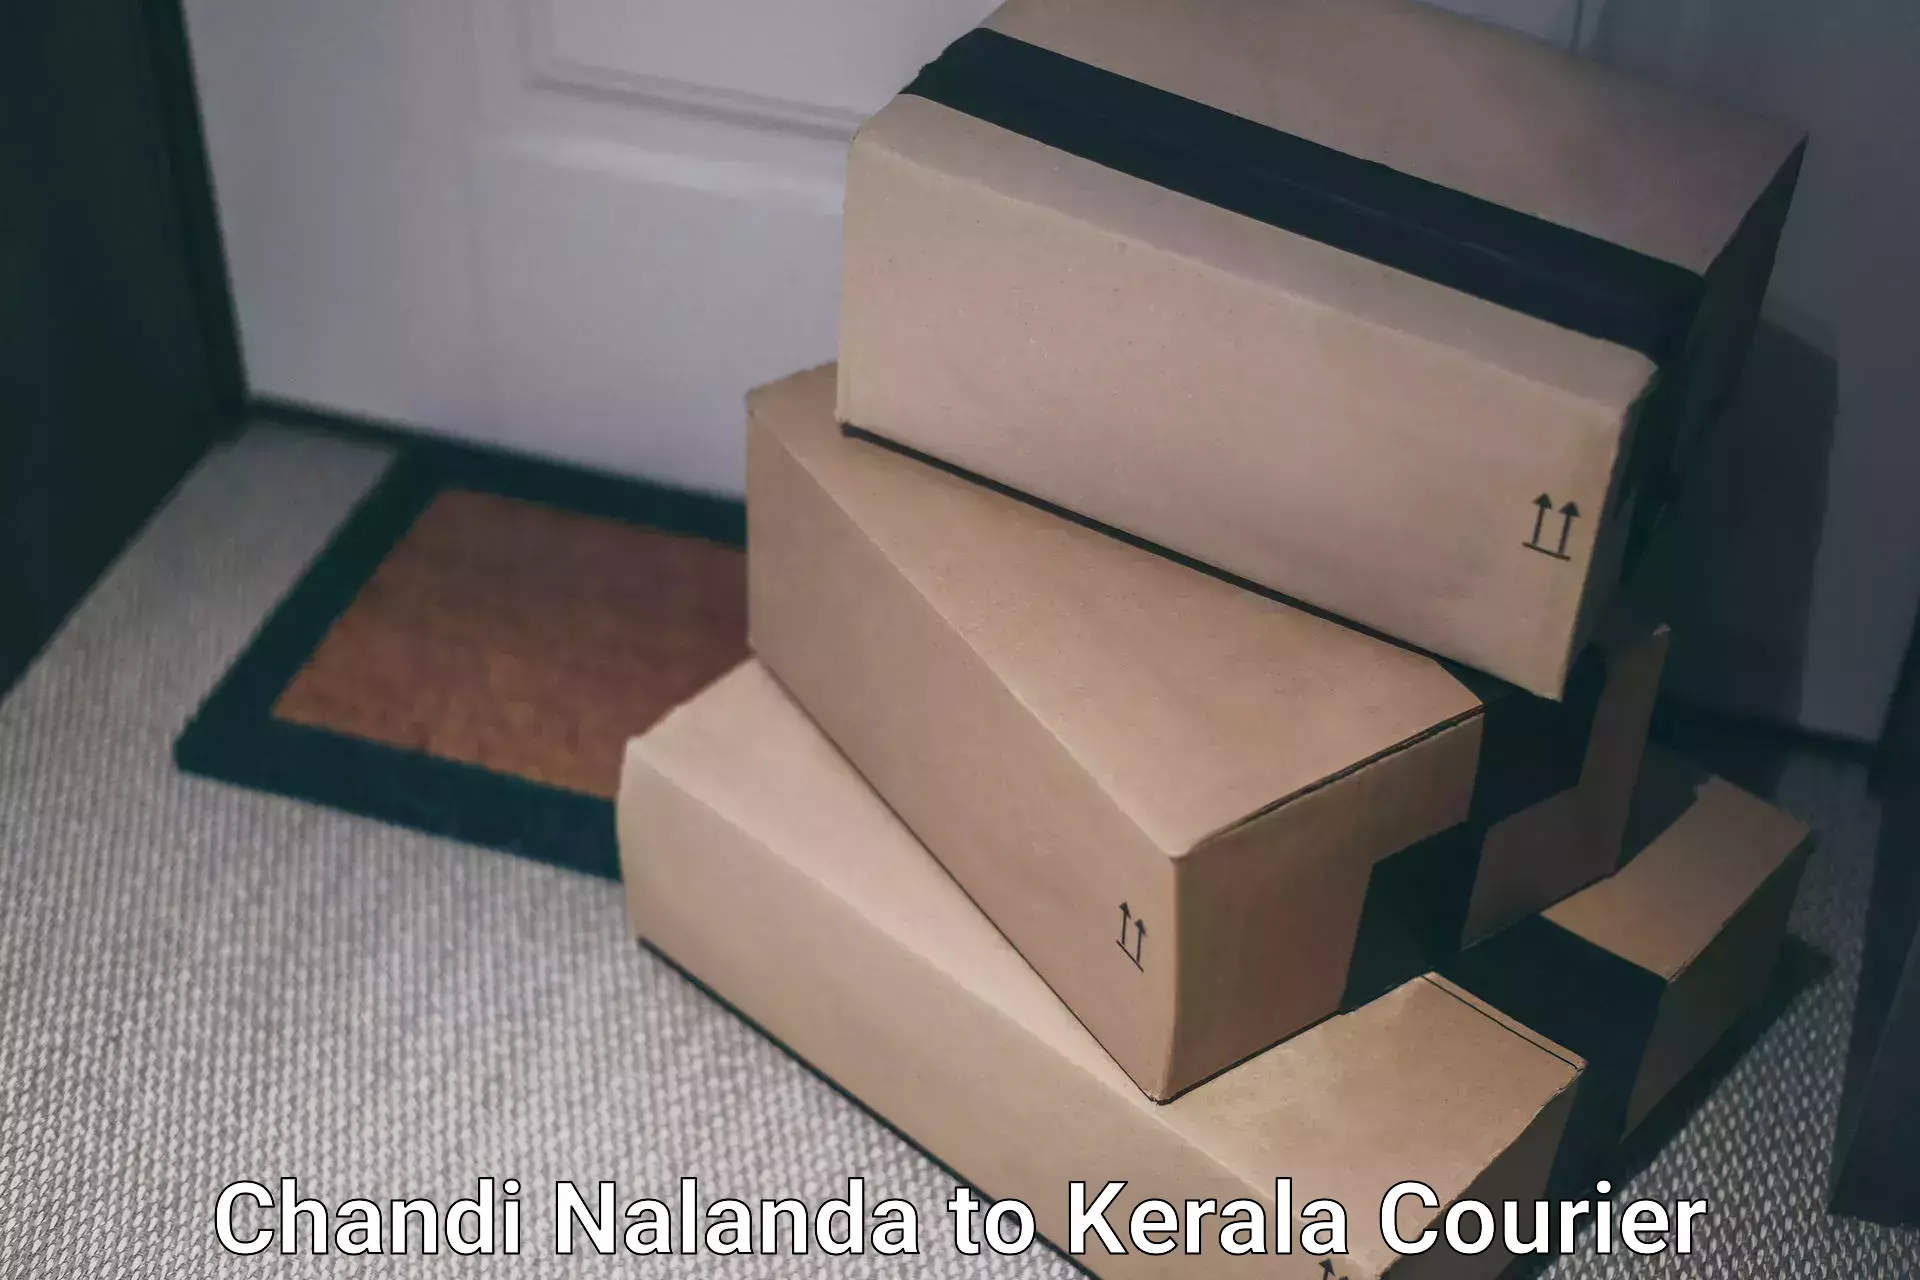 Customized shipping options Chandi Nalanda to Cochin